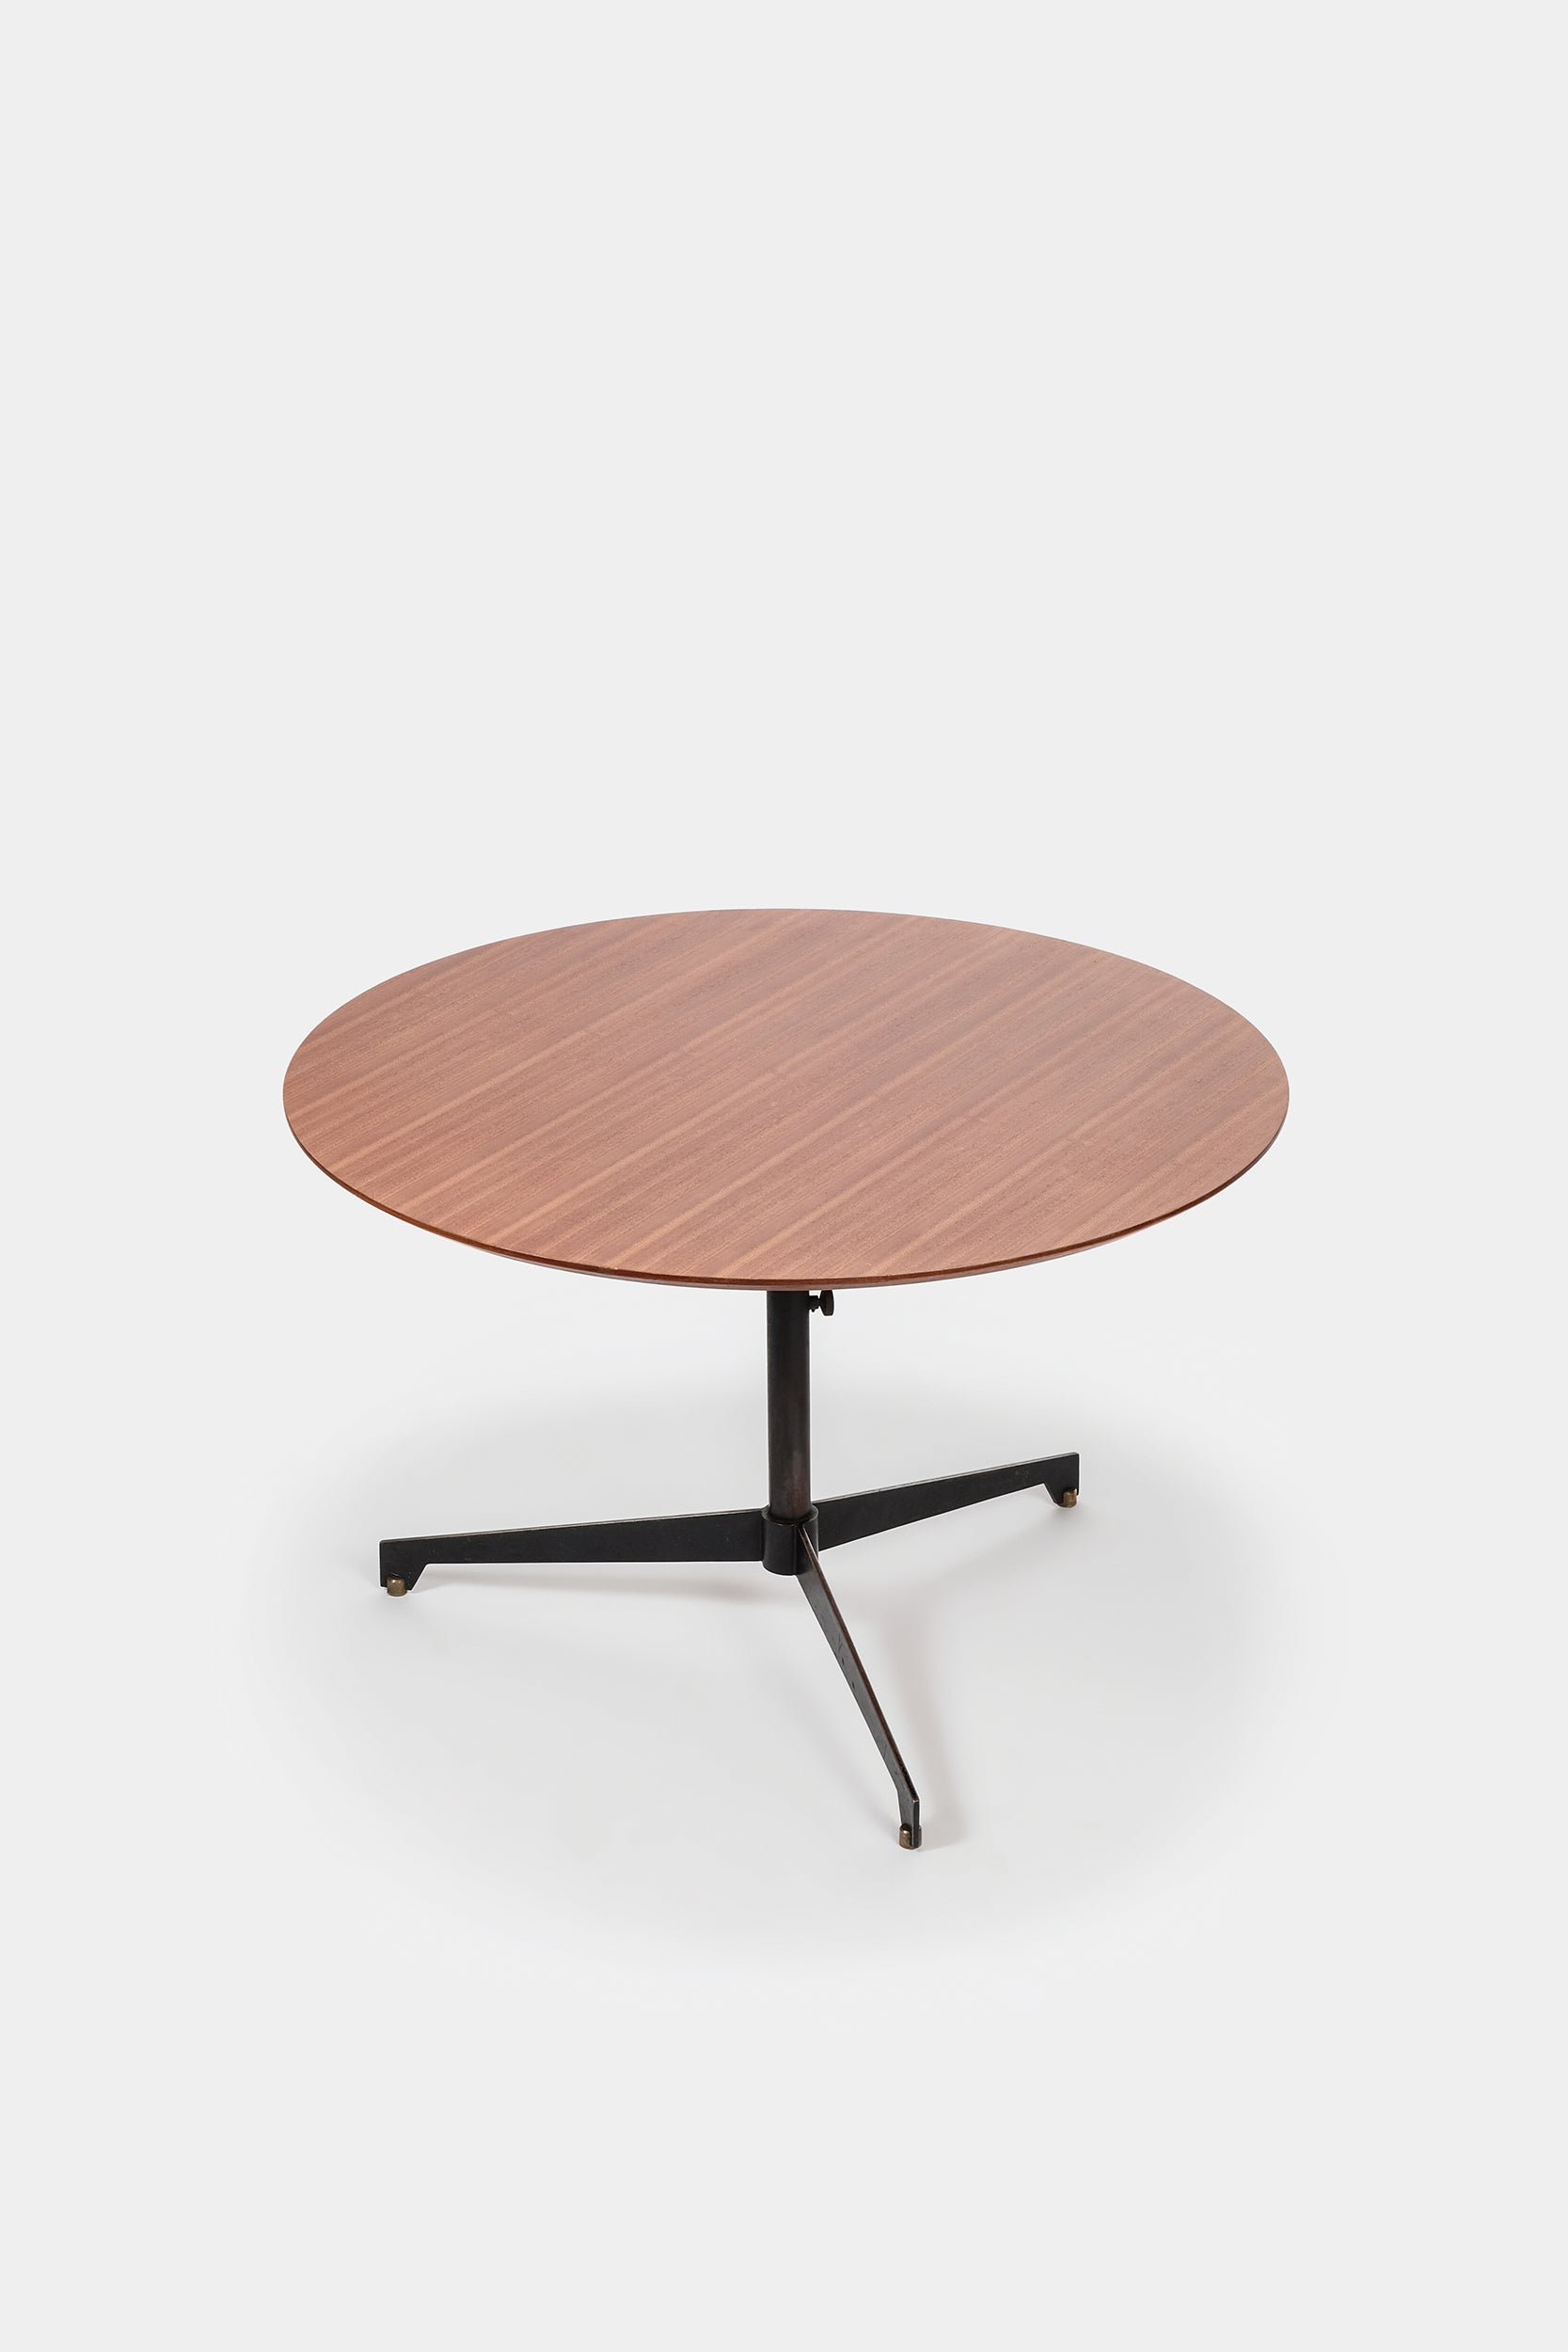 Ignazio Gardella, Adjustable Coffee and Dining table,  60s